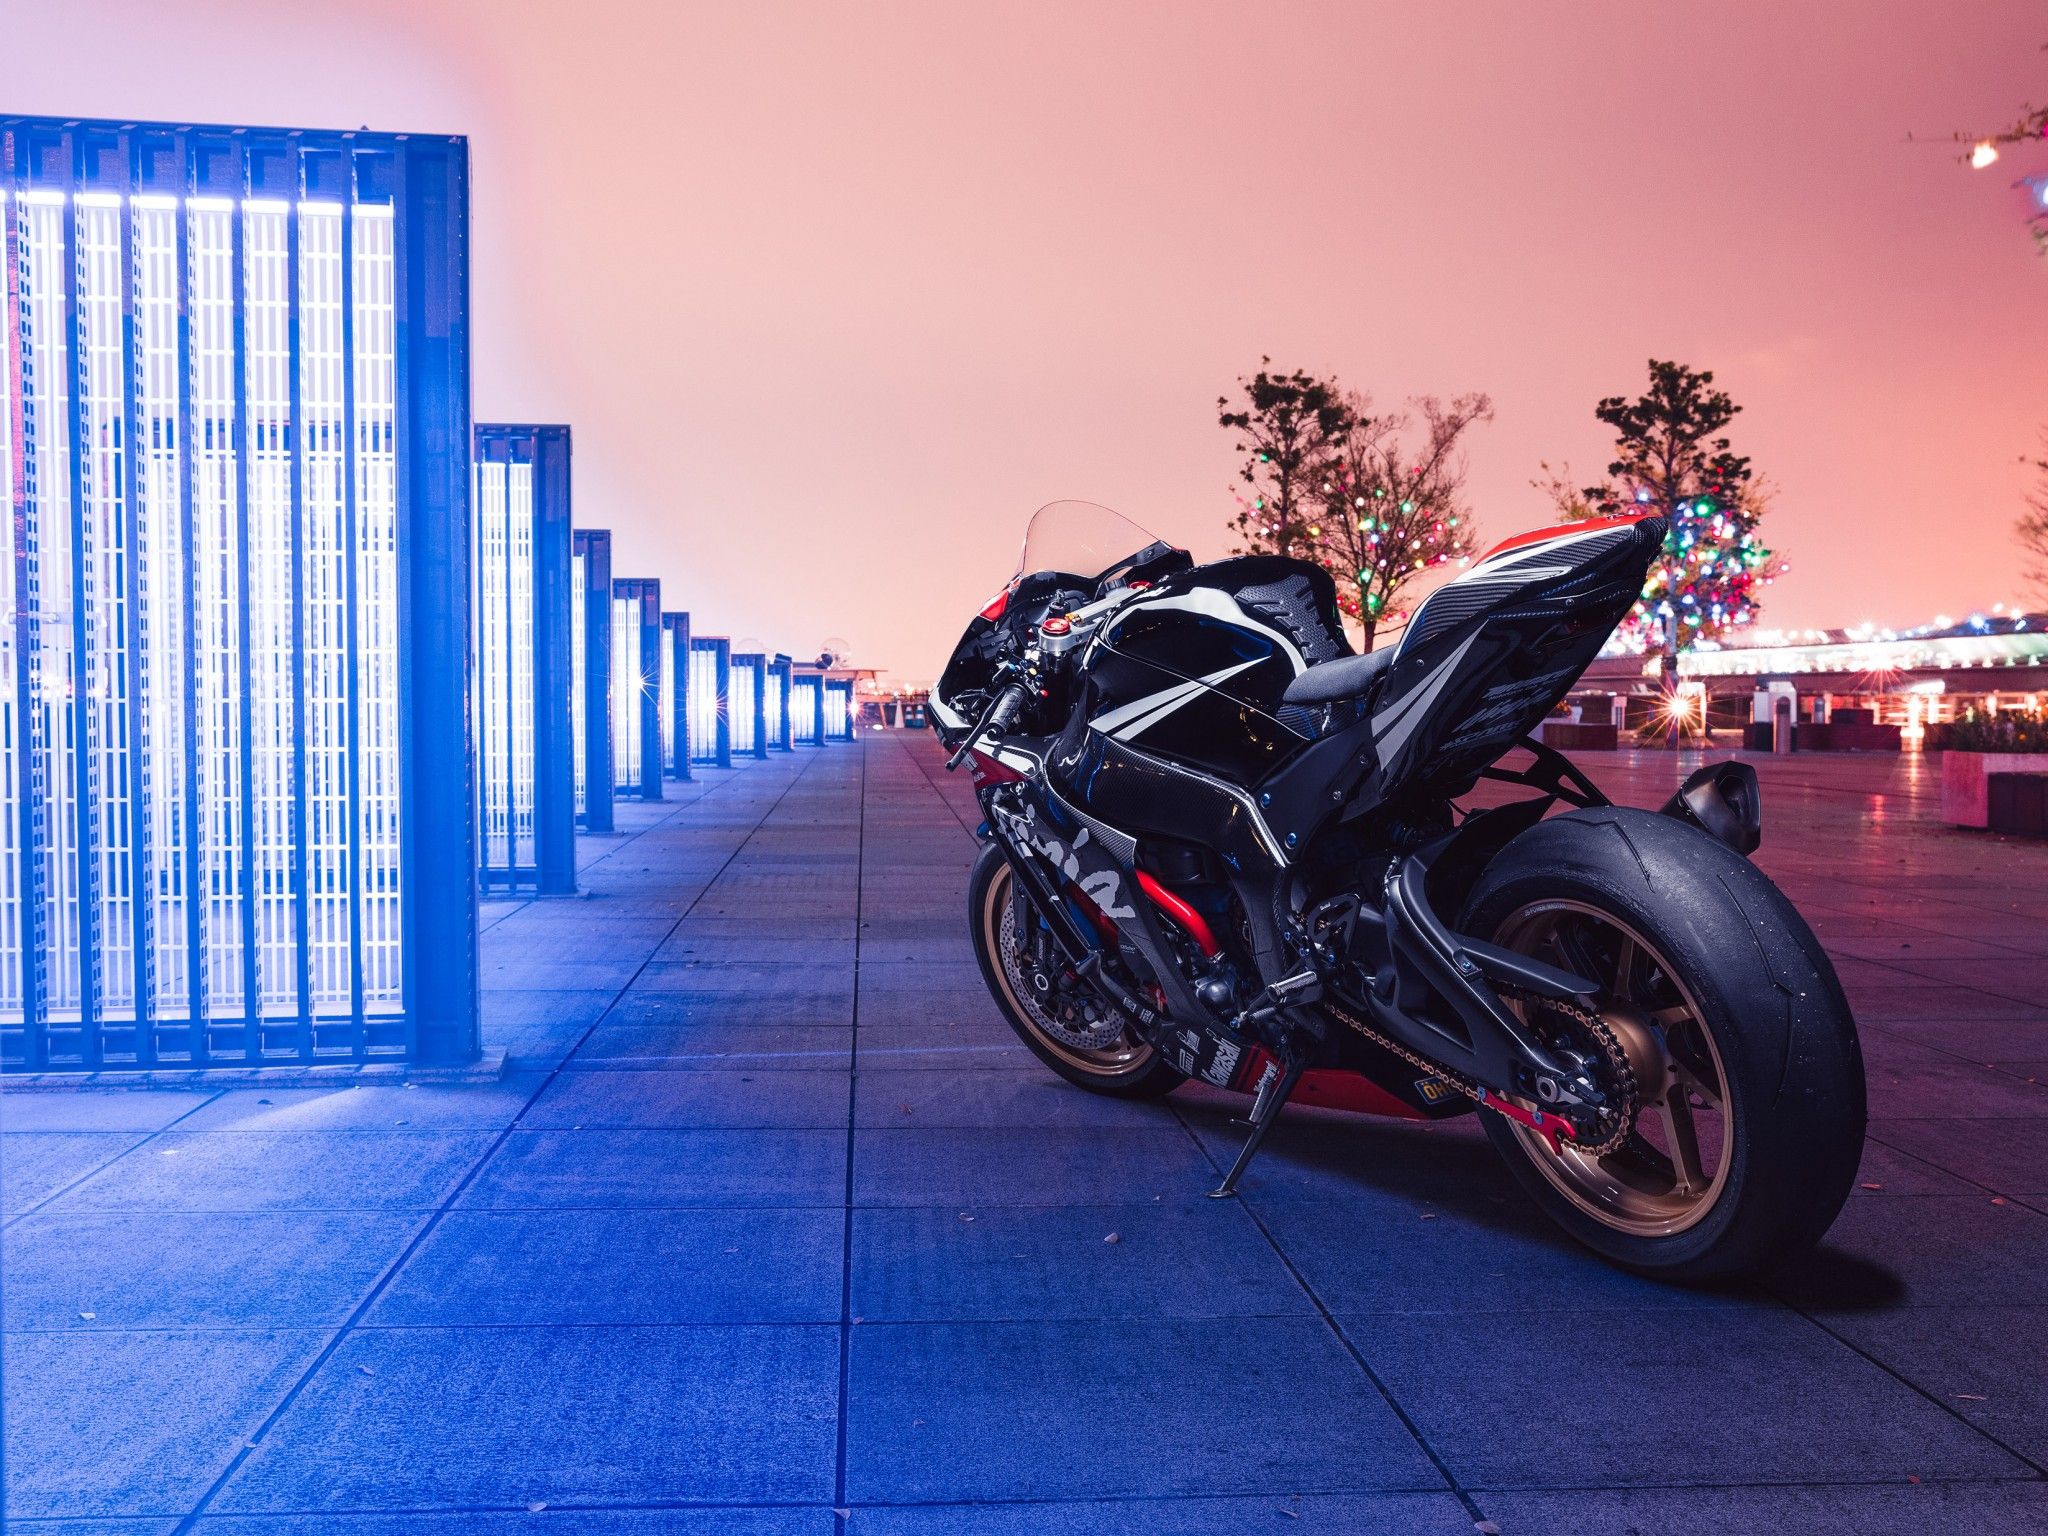 Kawasaki Ninja ZX 10R 4K Wallpaper, Sports Bikes, Neon, Bikes